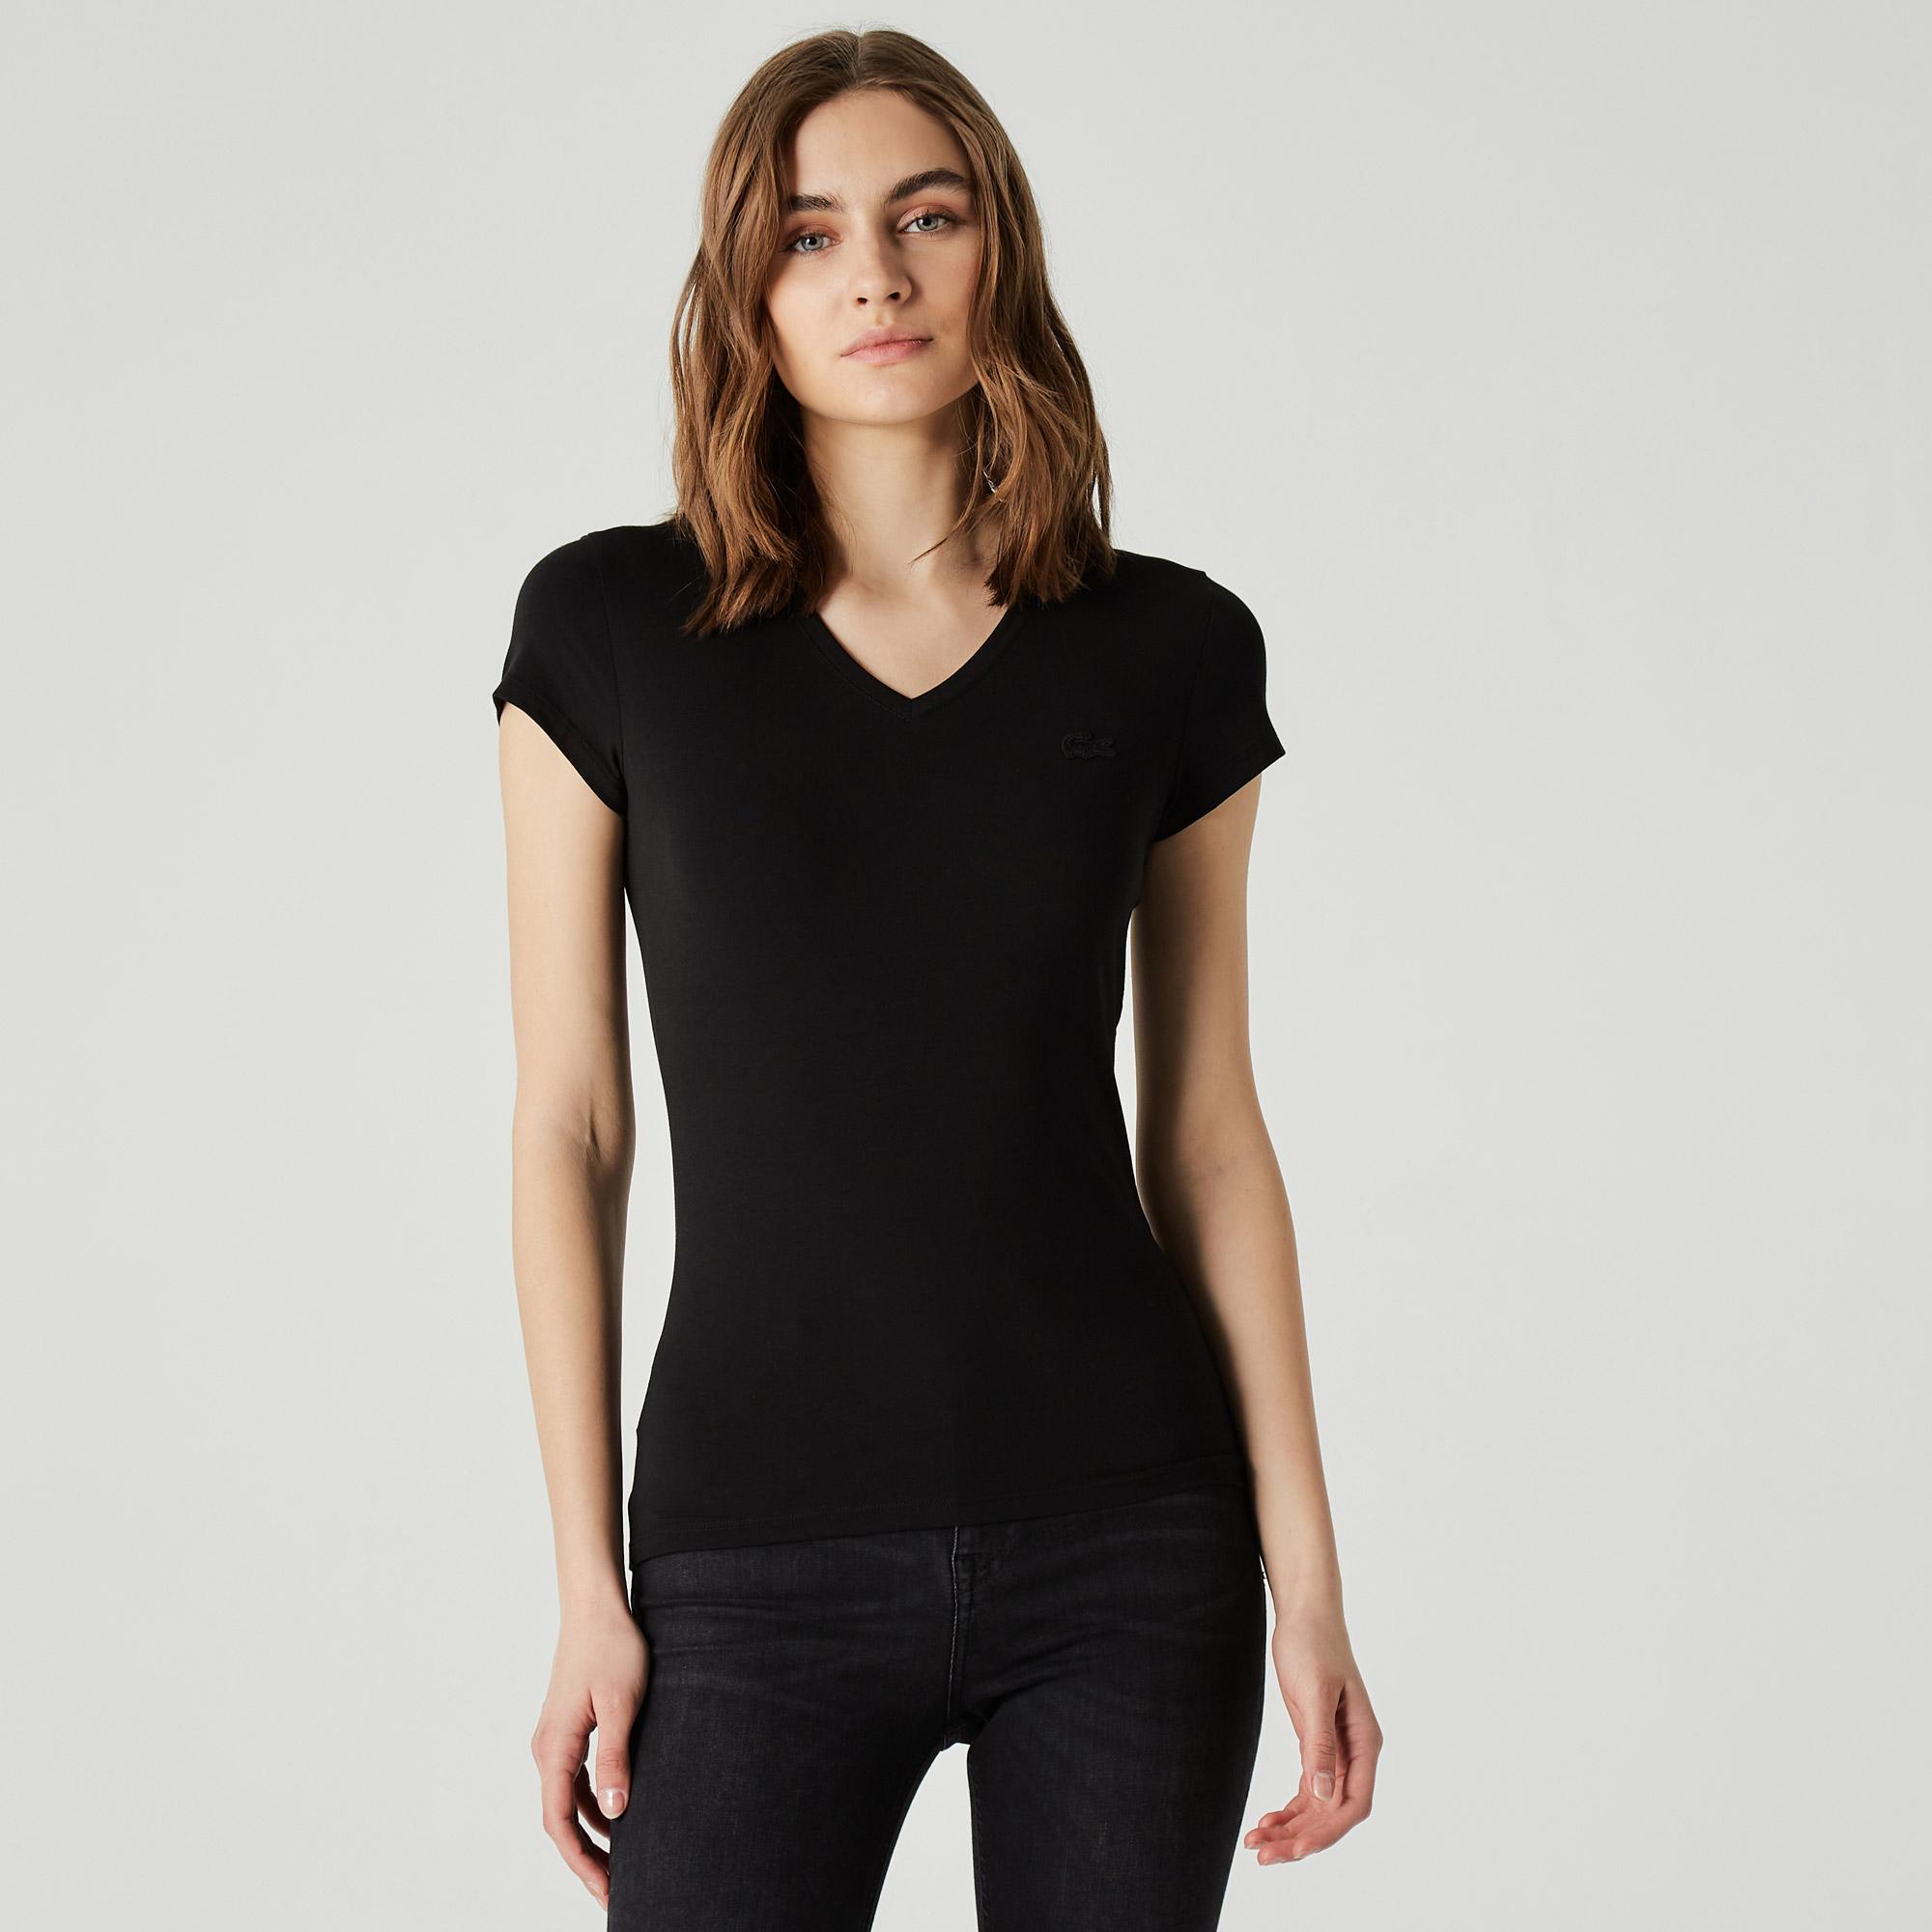 Lacoste Kadın Slim Fit V Yaka Siyah T-Shirt. 2